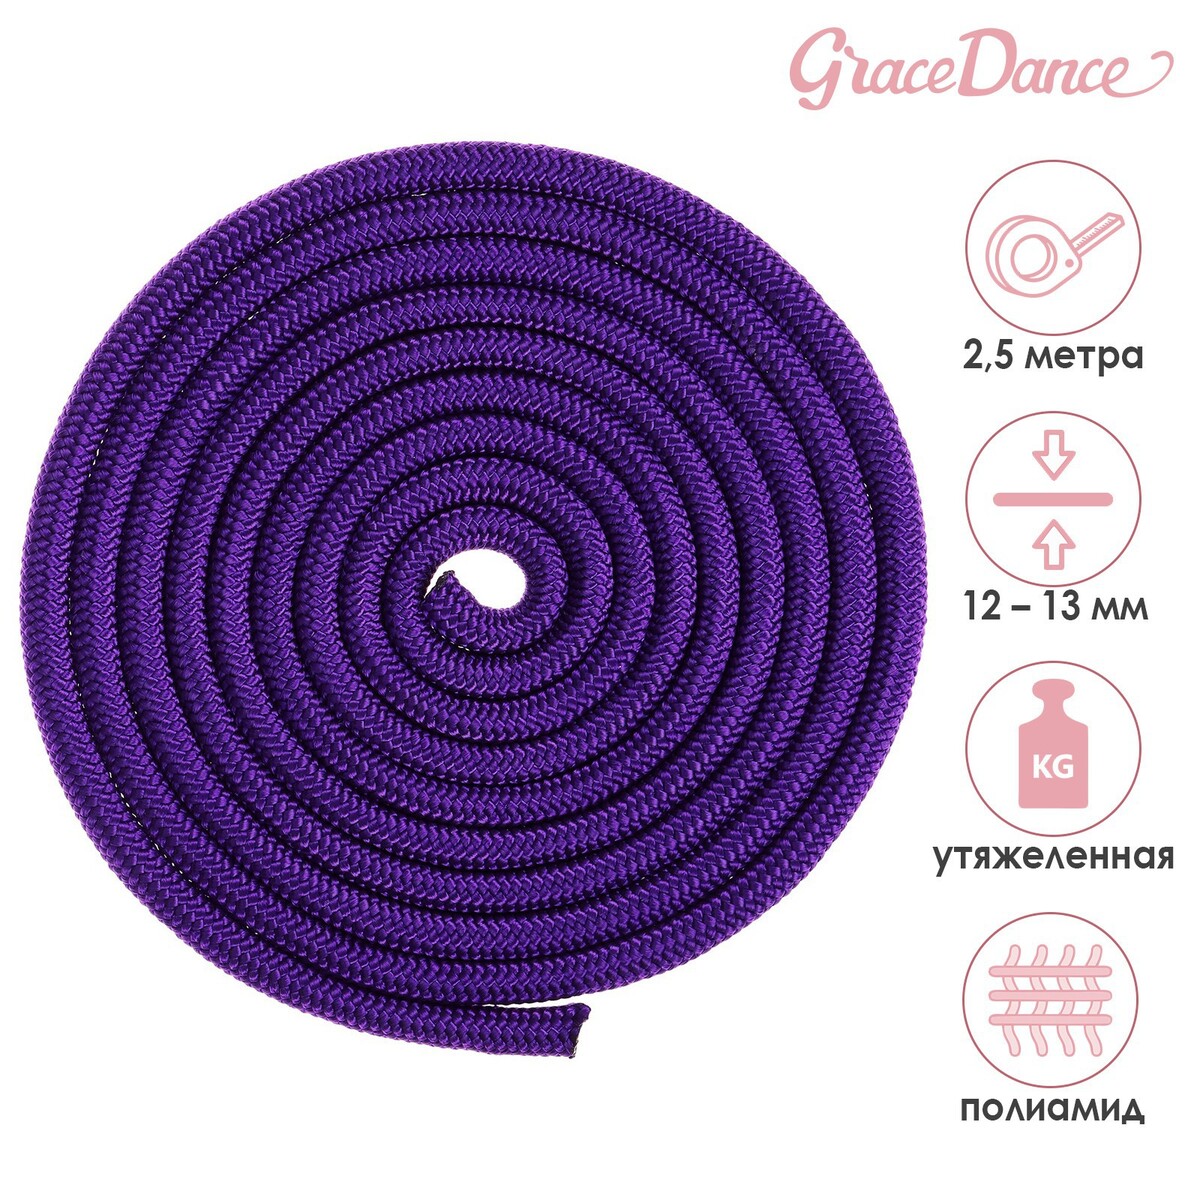 Скакалка для художественной гимнастики утяжеленная grace dance, 2,5 м, цвет фиолетовый лента для художественной гимнастики с палочкой grace dance 4 м фиолетовый